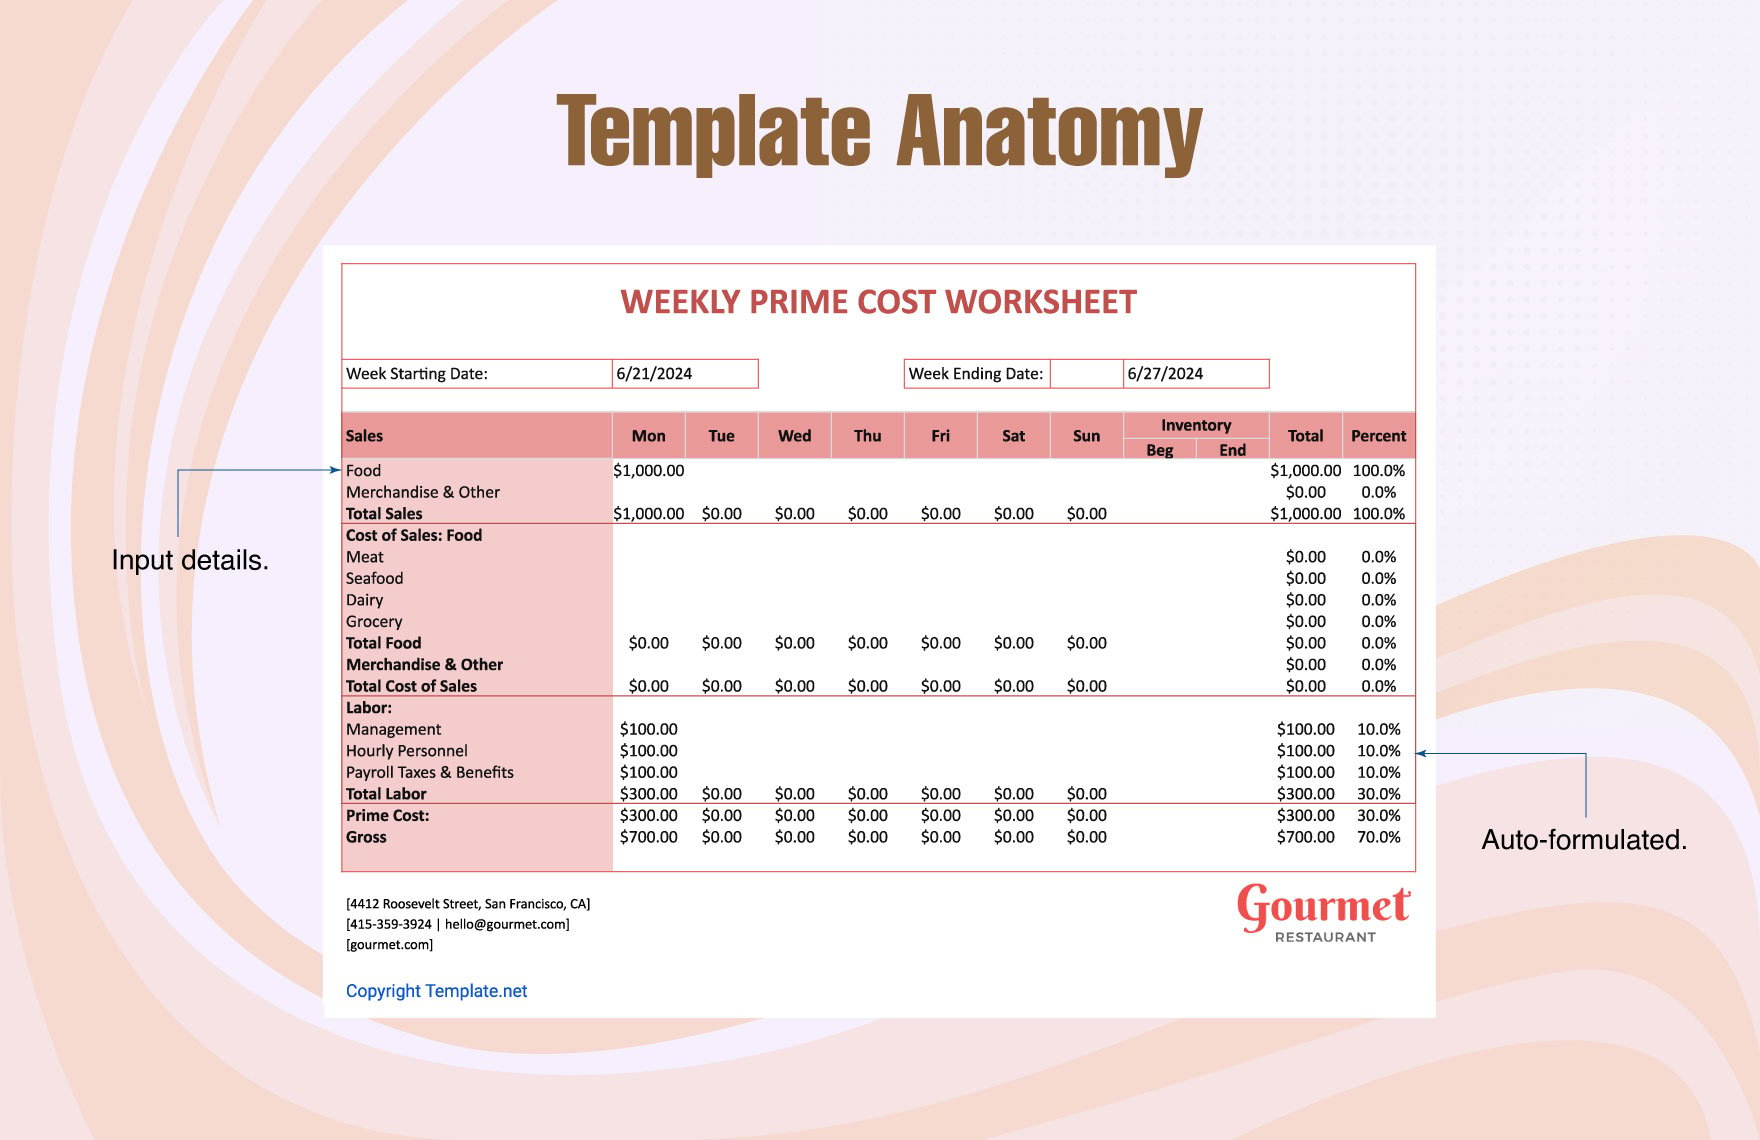 Weekly Prime Cost Worksheet Template